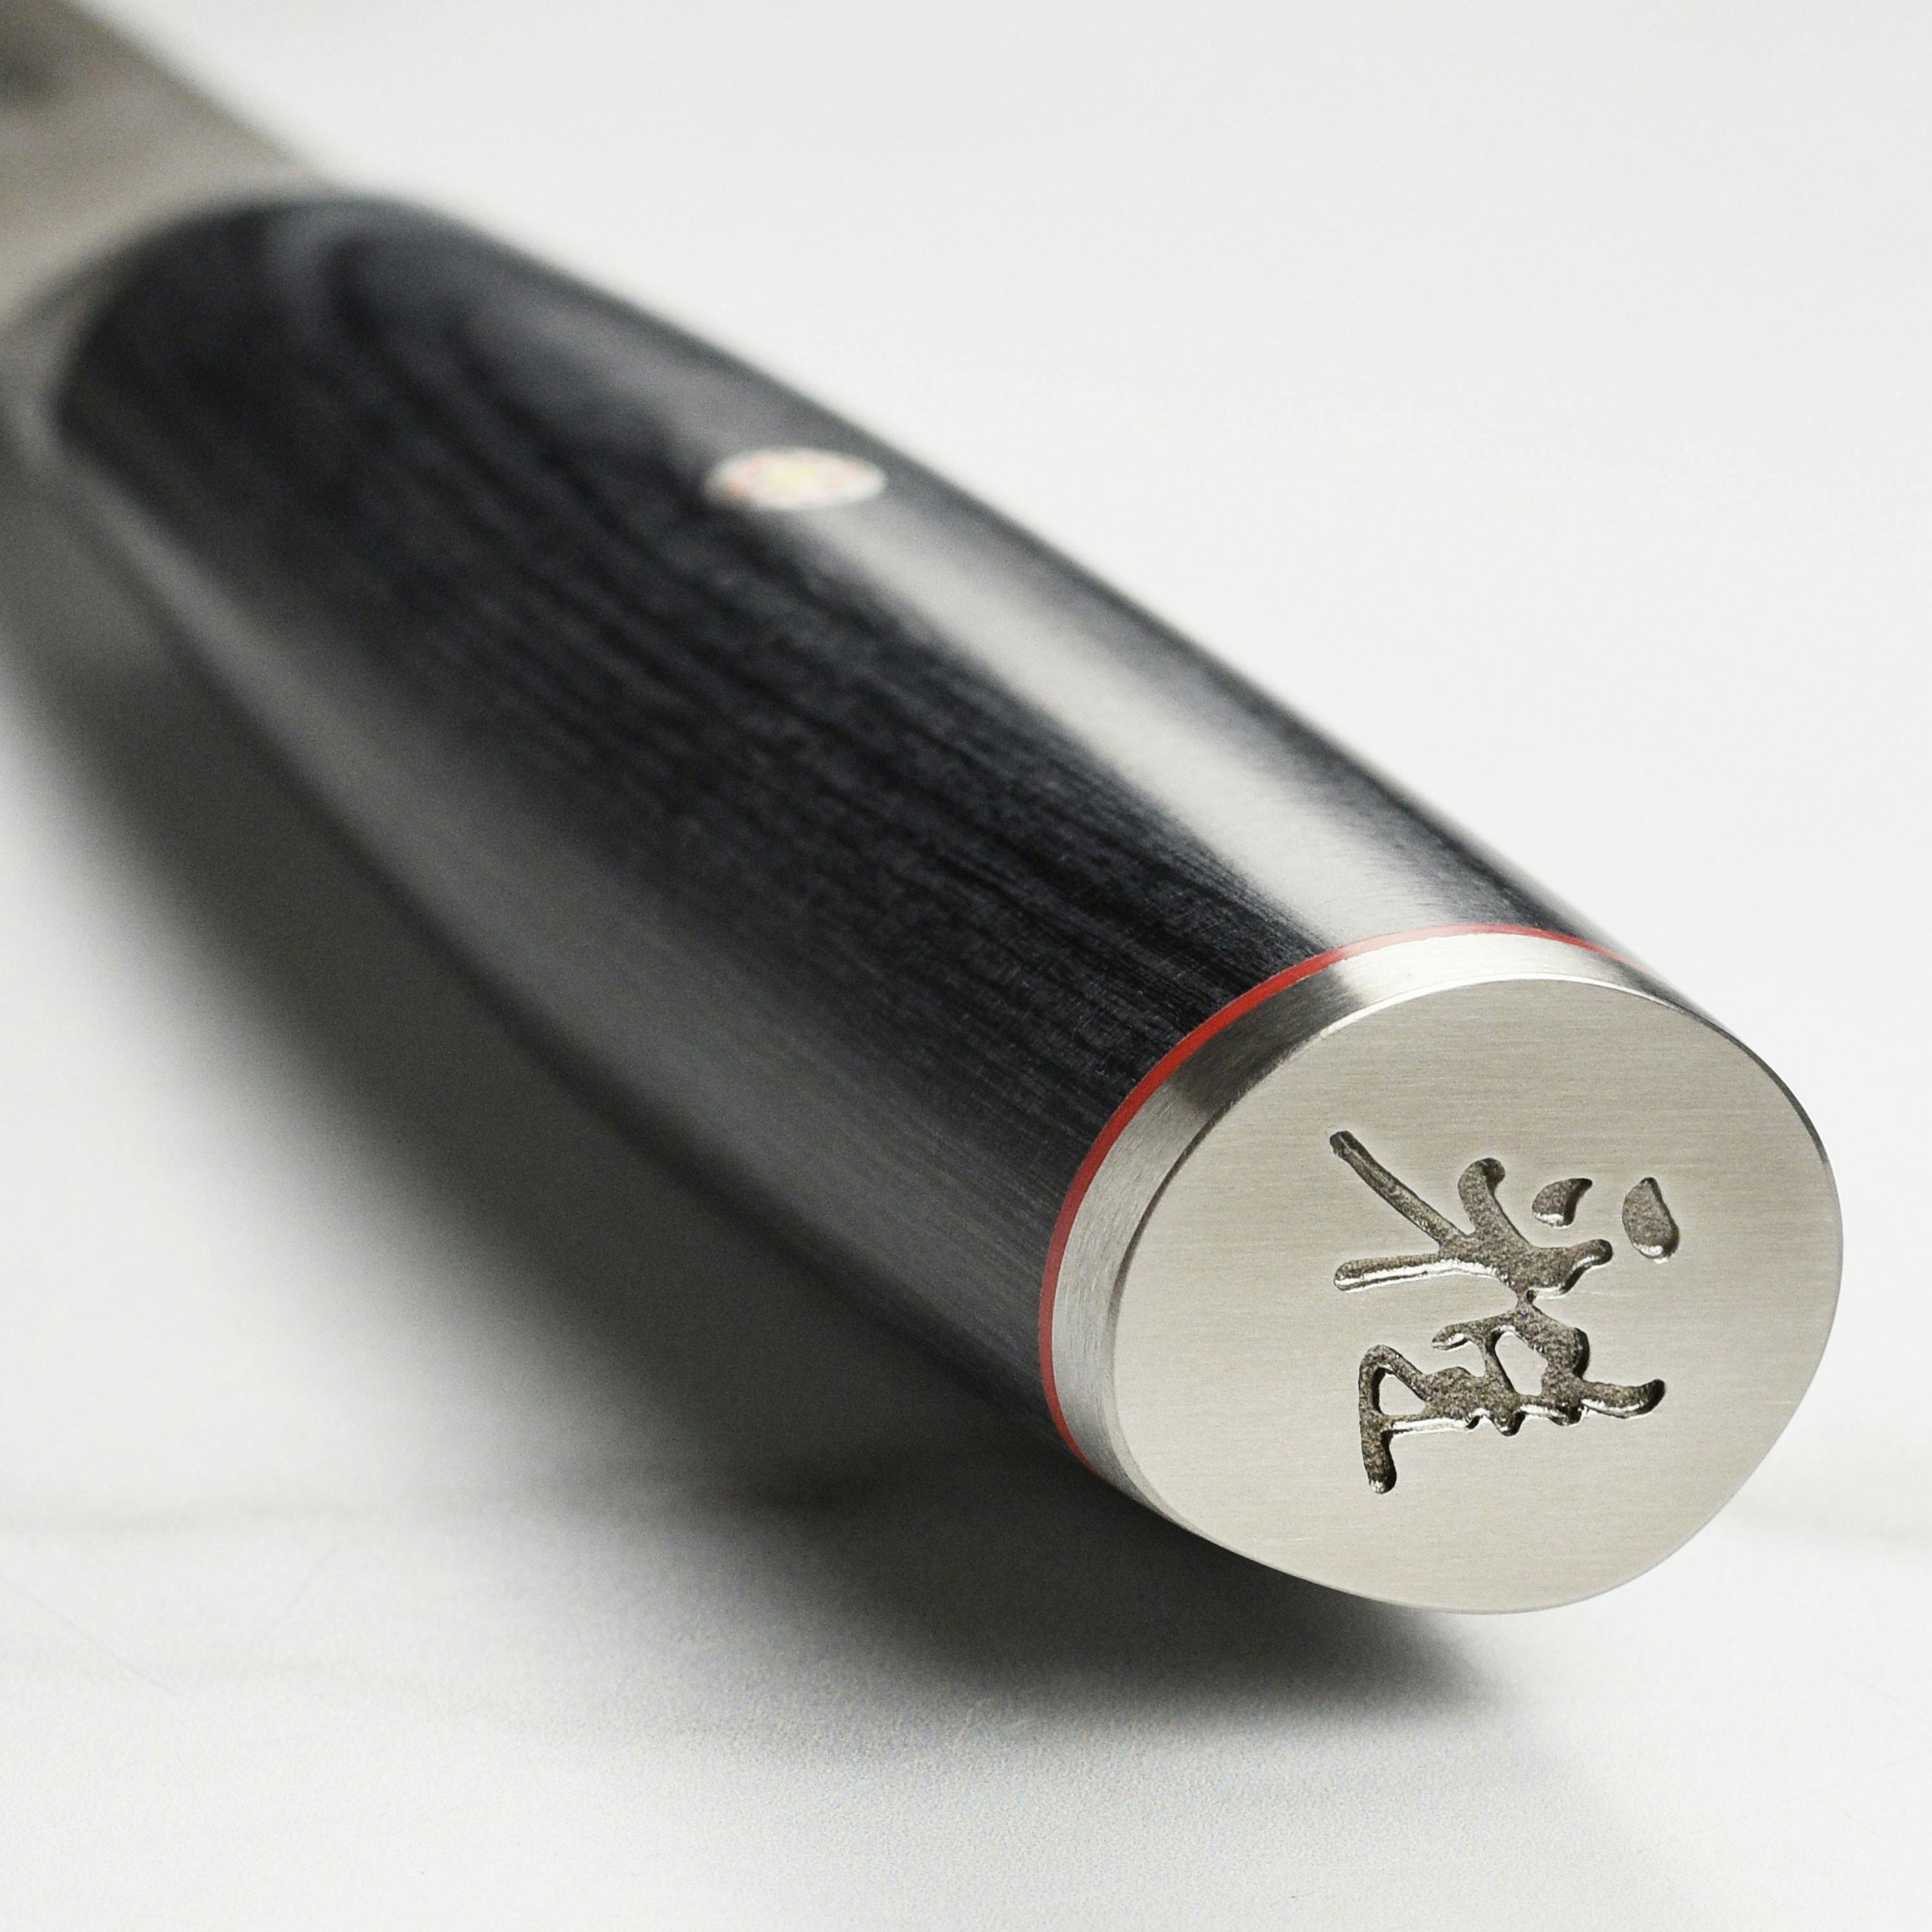 Miyabi Kaizen II 3.5" Pakka Wood Paring Knife